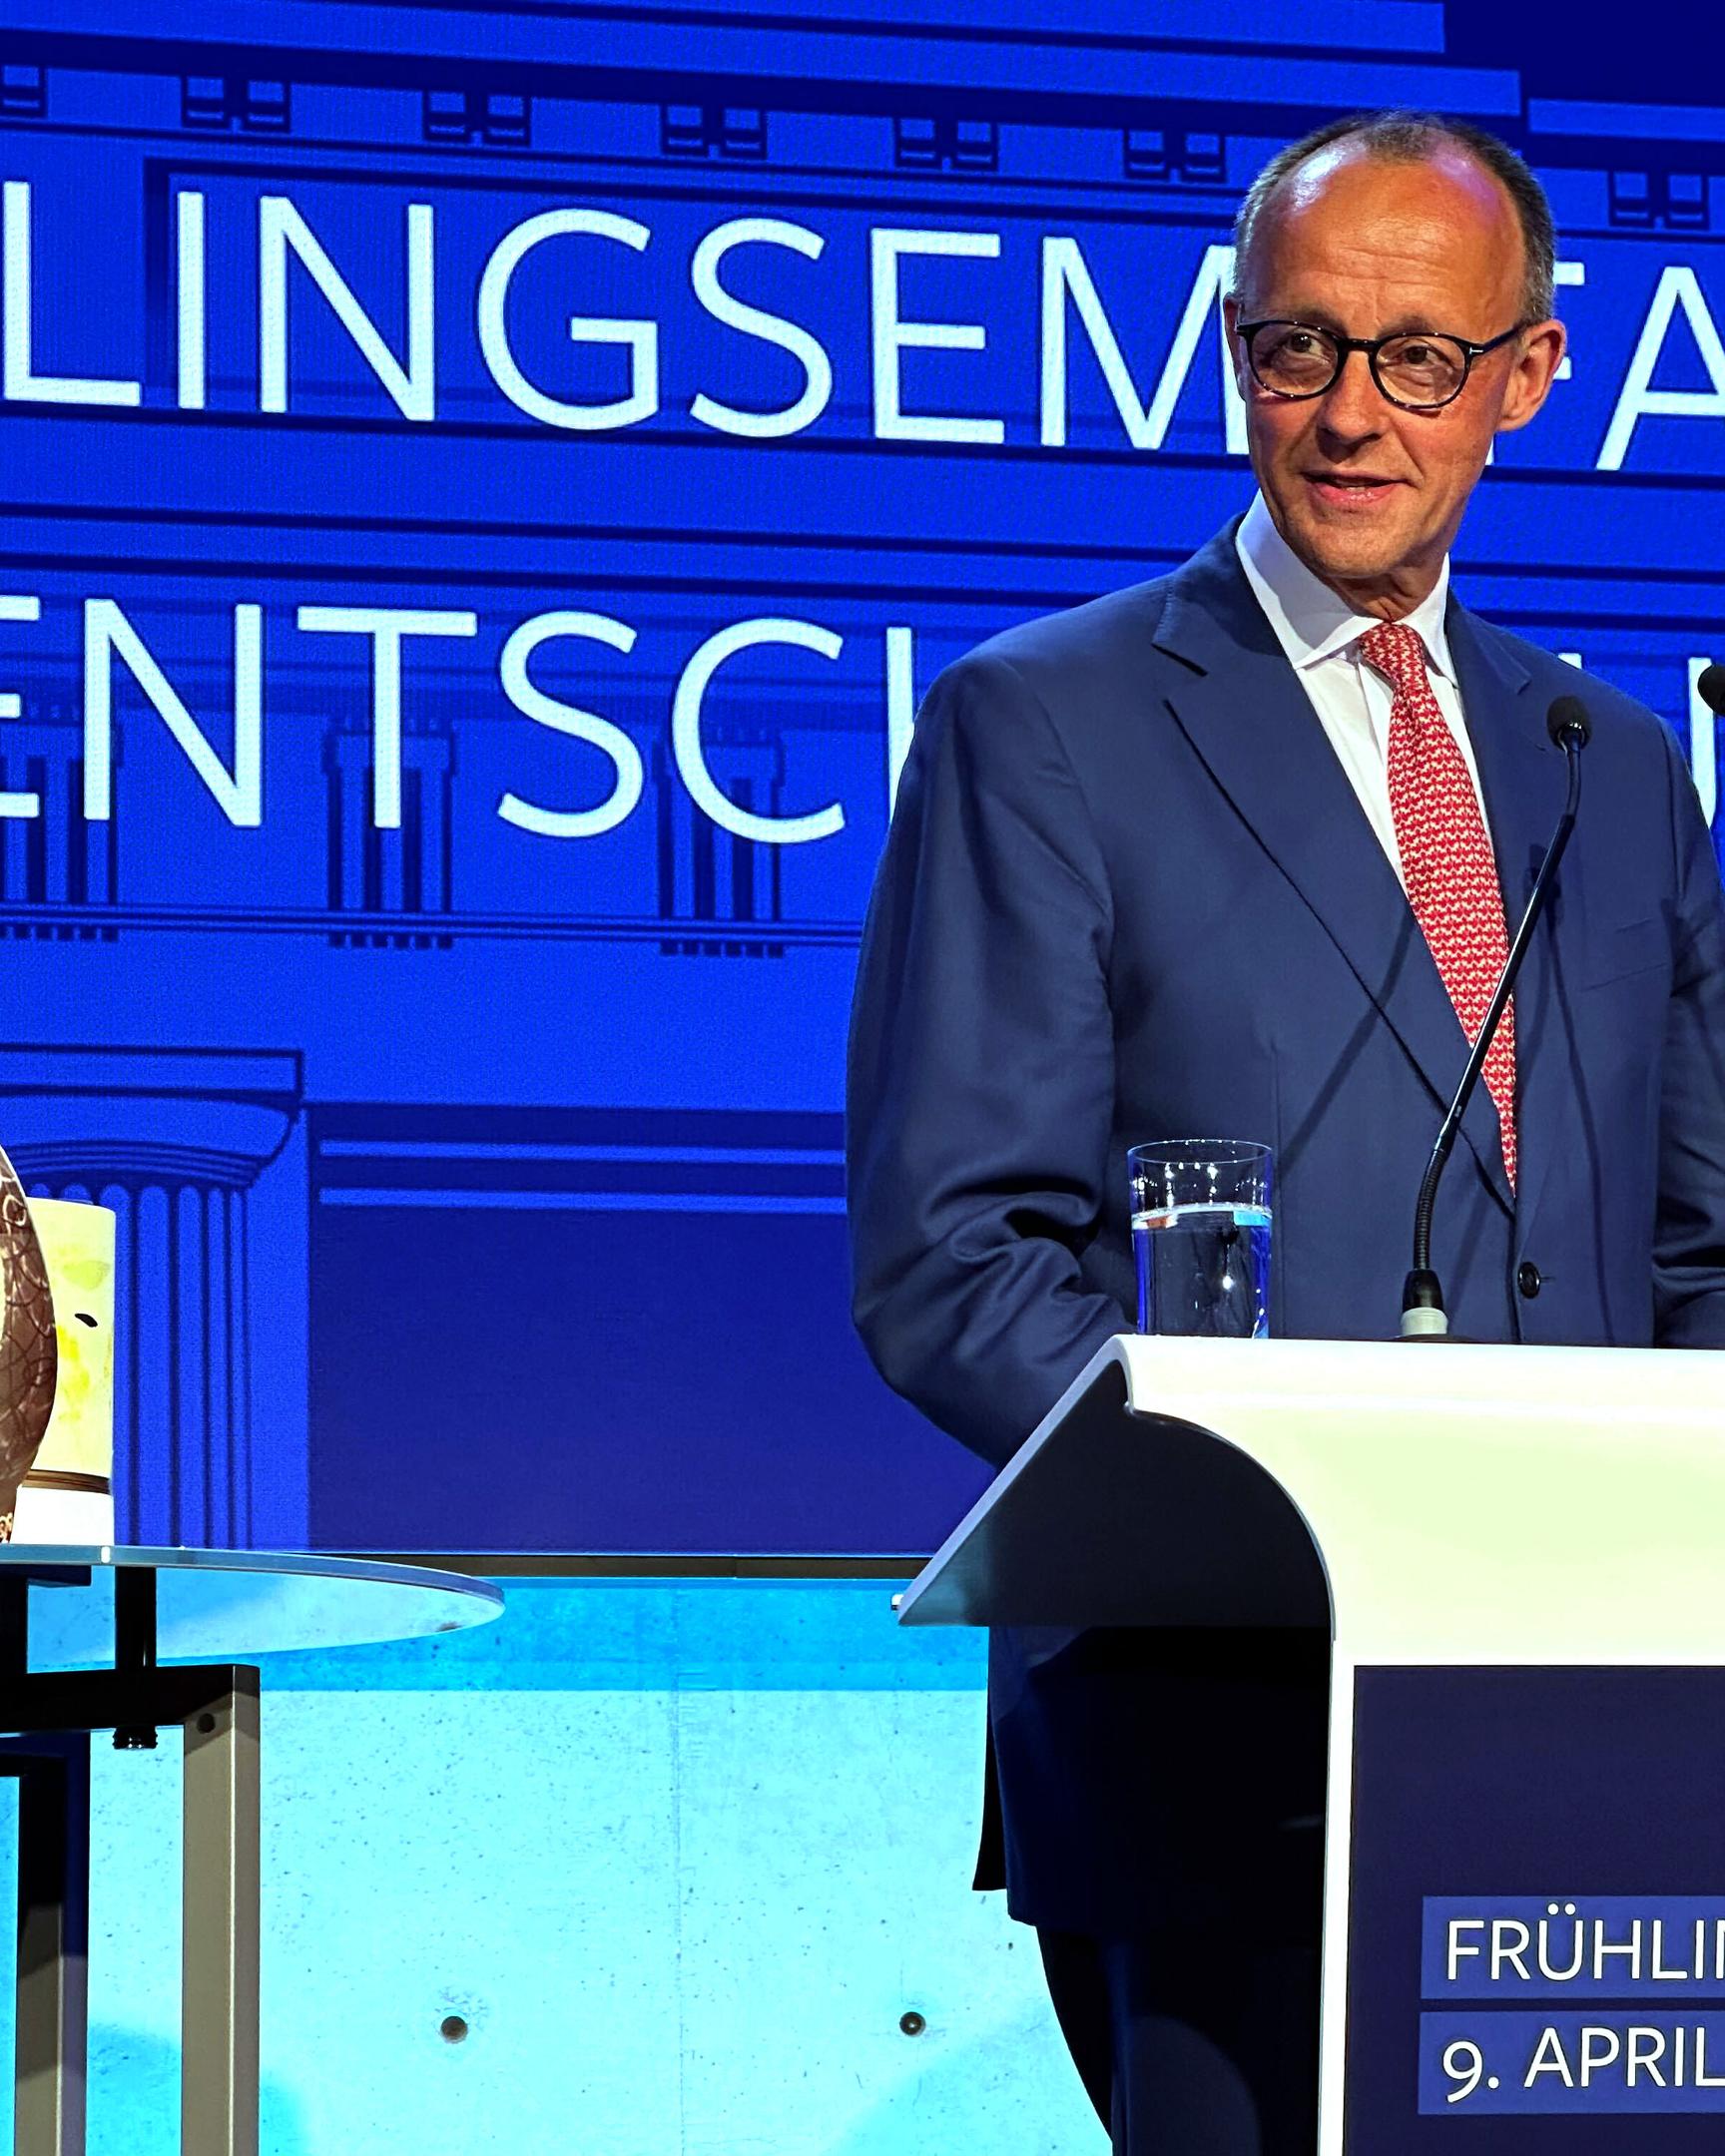 Friedrich Merz (CDU), Bundesvorsitzender der CDU, spricht beim Empfang des JU-Mitgliedermagazins „Entscheidung“ der Jungen Union (JU), zu der Merz eine gebastelte Replik des Ostereis von CSU-Chef Markus Söder mitbrachte .